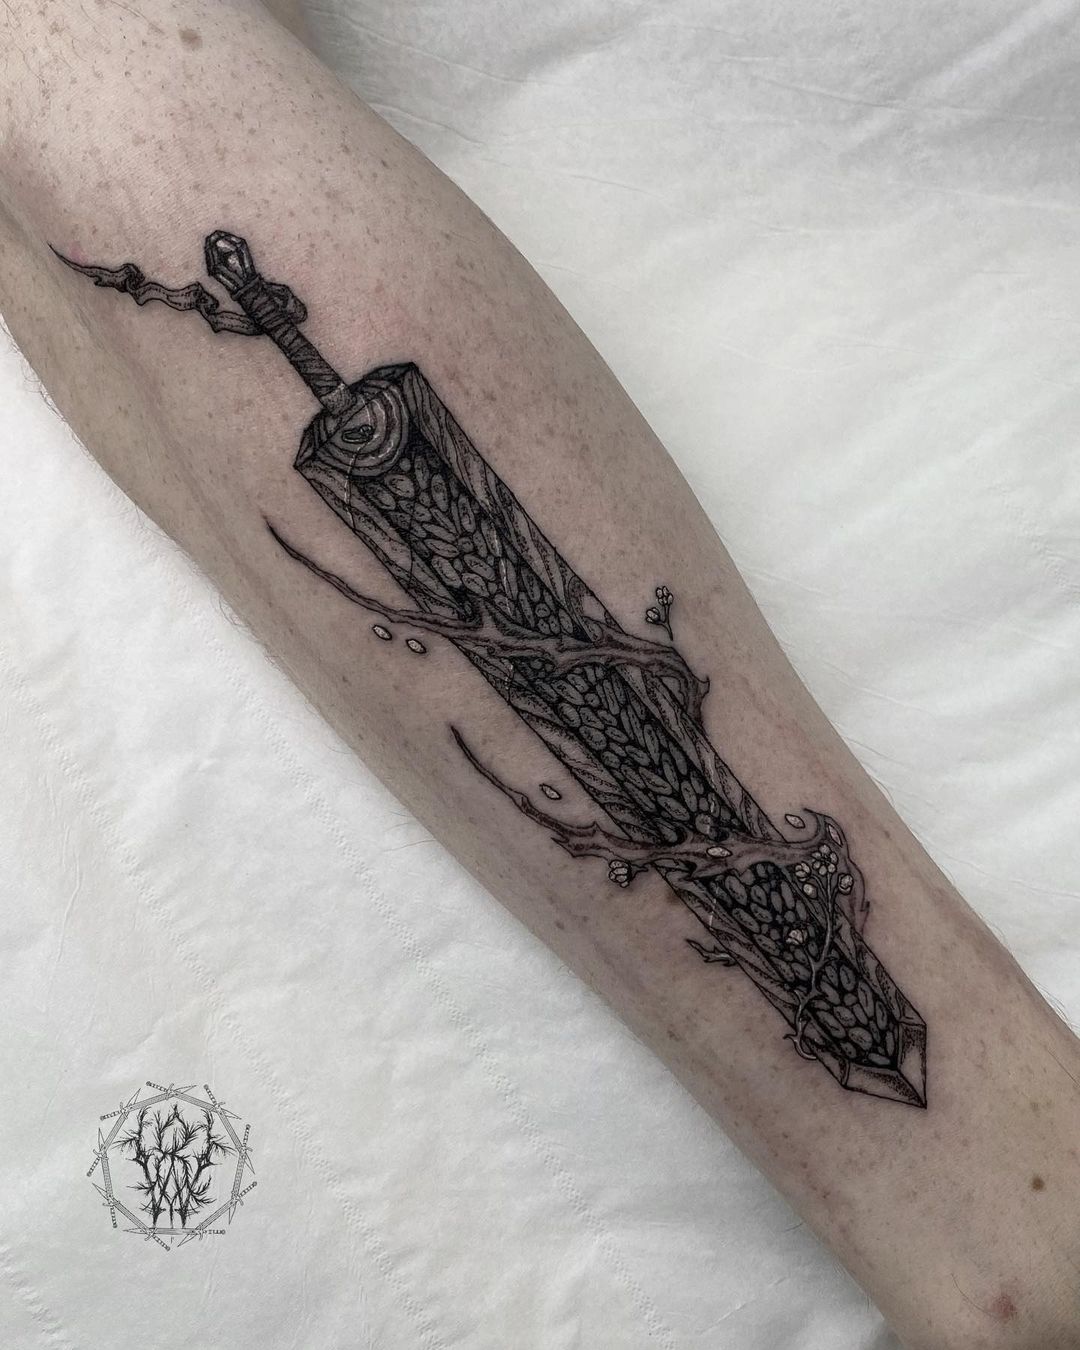 Dagger tattoo ideas by wulfbaron